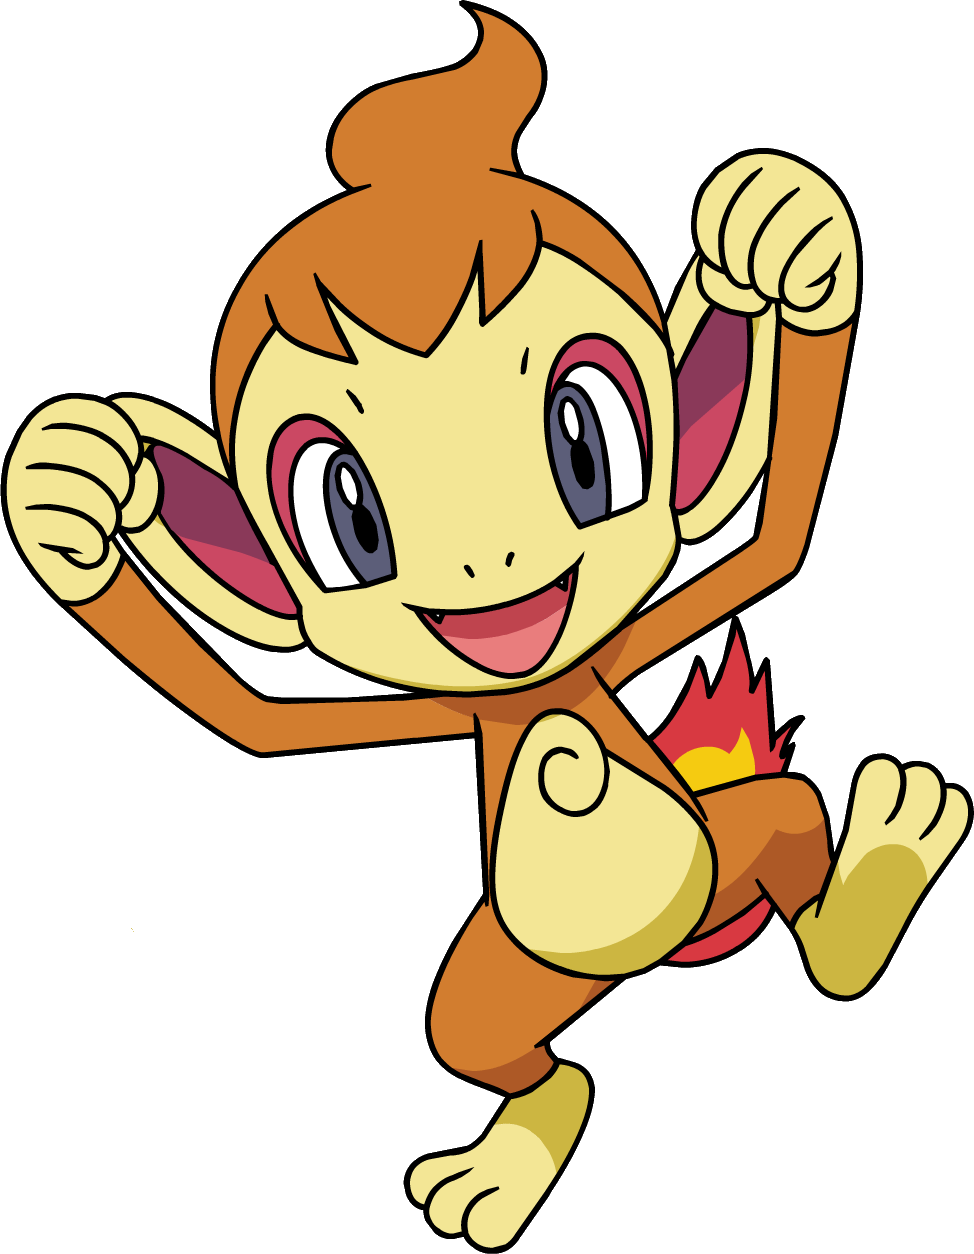 Chimchar | Pokémon Wiki | FANDOM powered by Wikia